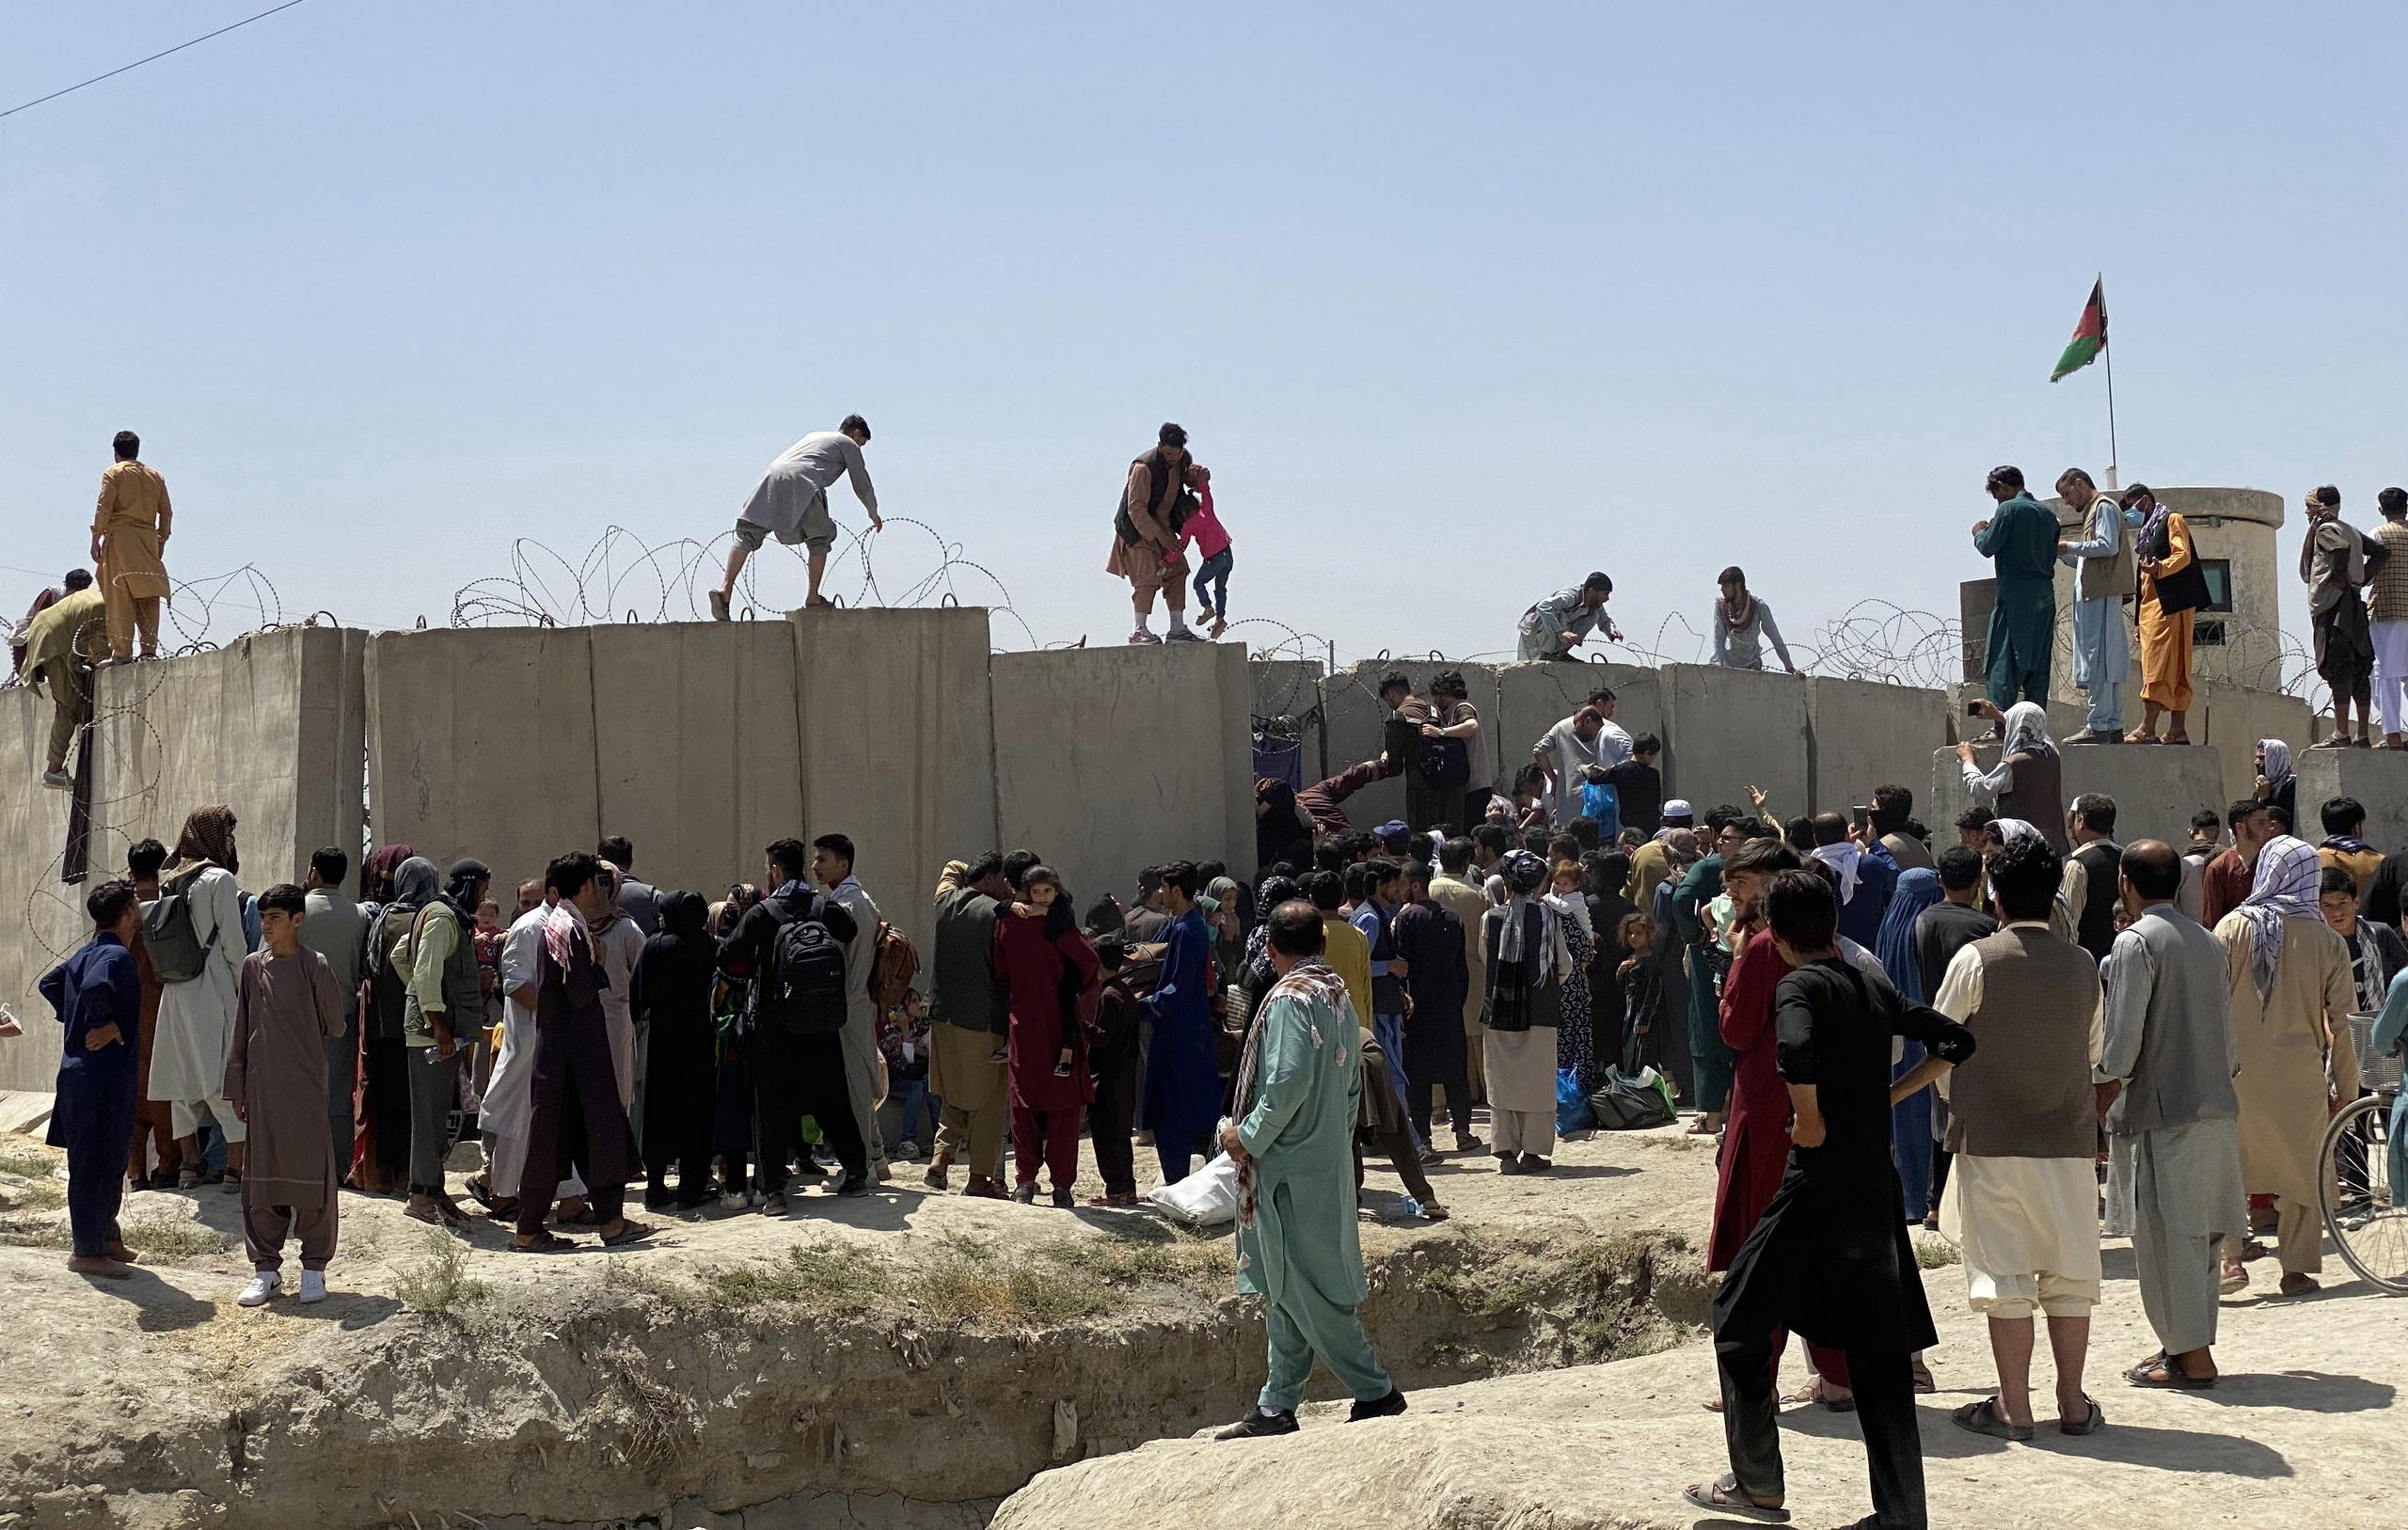 Afganos se agolpan a lo largo del muro del aeropuerto internacional Hamid Karzai antes de saltarlo en un intento de abandonar el país, este lunes en Kabul, después de darse a conocer de que el propio presidente afgano, Ashra Ghani, huyera ayer en secreto. EFE/STRINGER
